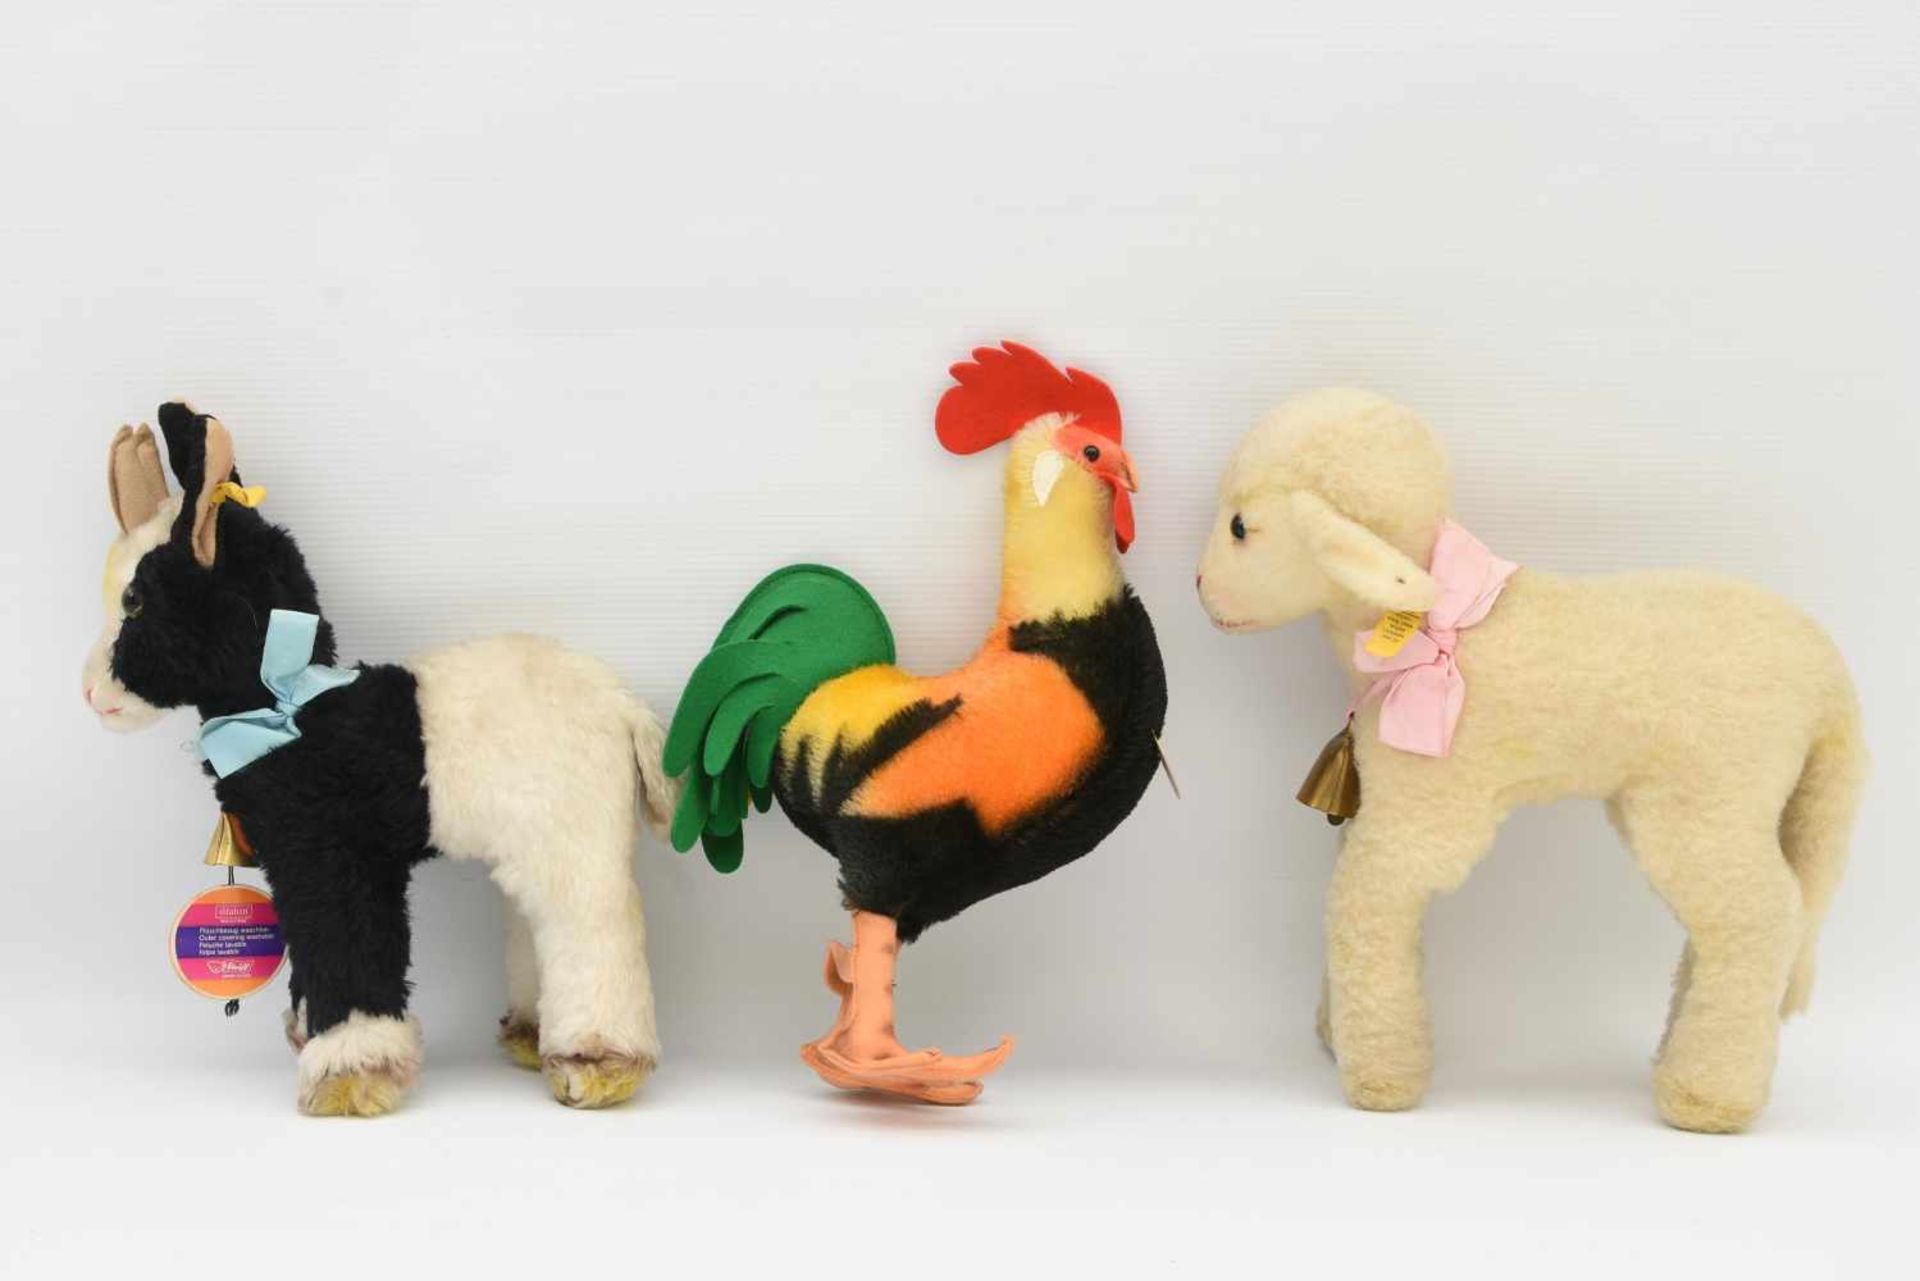 STEIFF. "Drei heimische Nutztiere", Wolle/Baumwolle/Dralon, Knopffahne und original Steiff-Marke, - Bild 2 aus 3